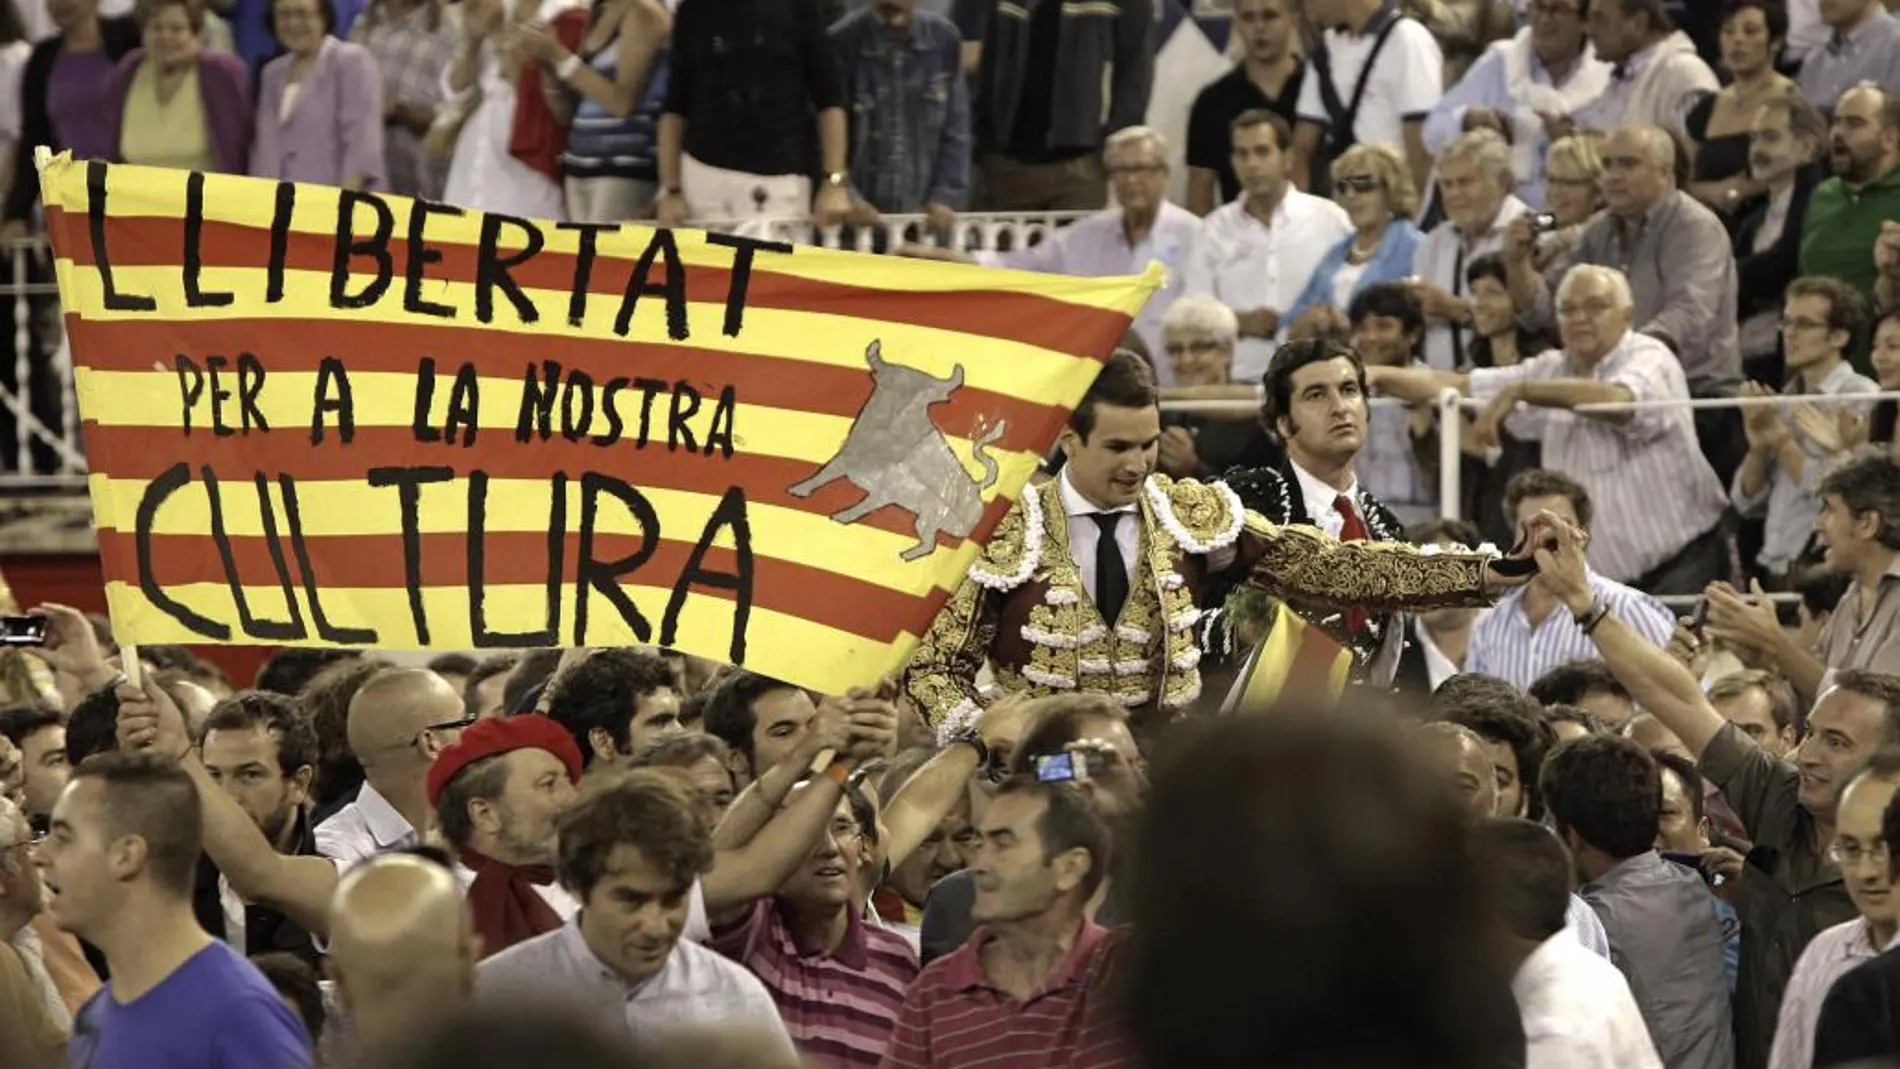 El torero José María Manzanares (2d) y "Morante de la Puebla"(d) salen a hombros por la Puerta Grande acompañados por una 'senyera' con el lema "Llibertat per a la nostra cultura"tras el penúltimo festejo taurino celebrado en la Monumental de Barcelona